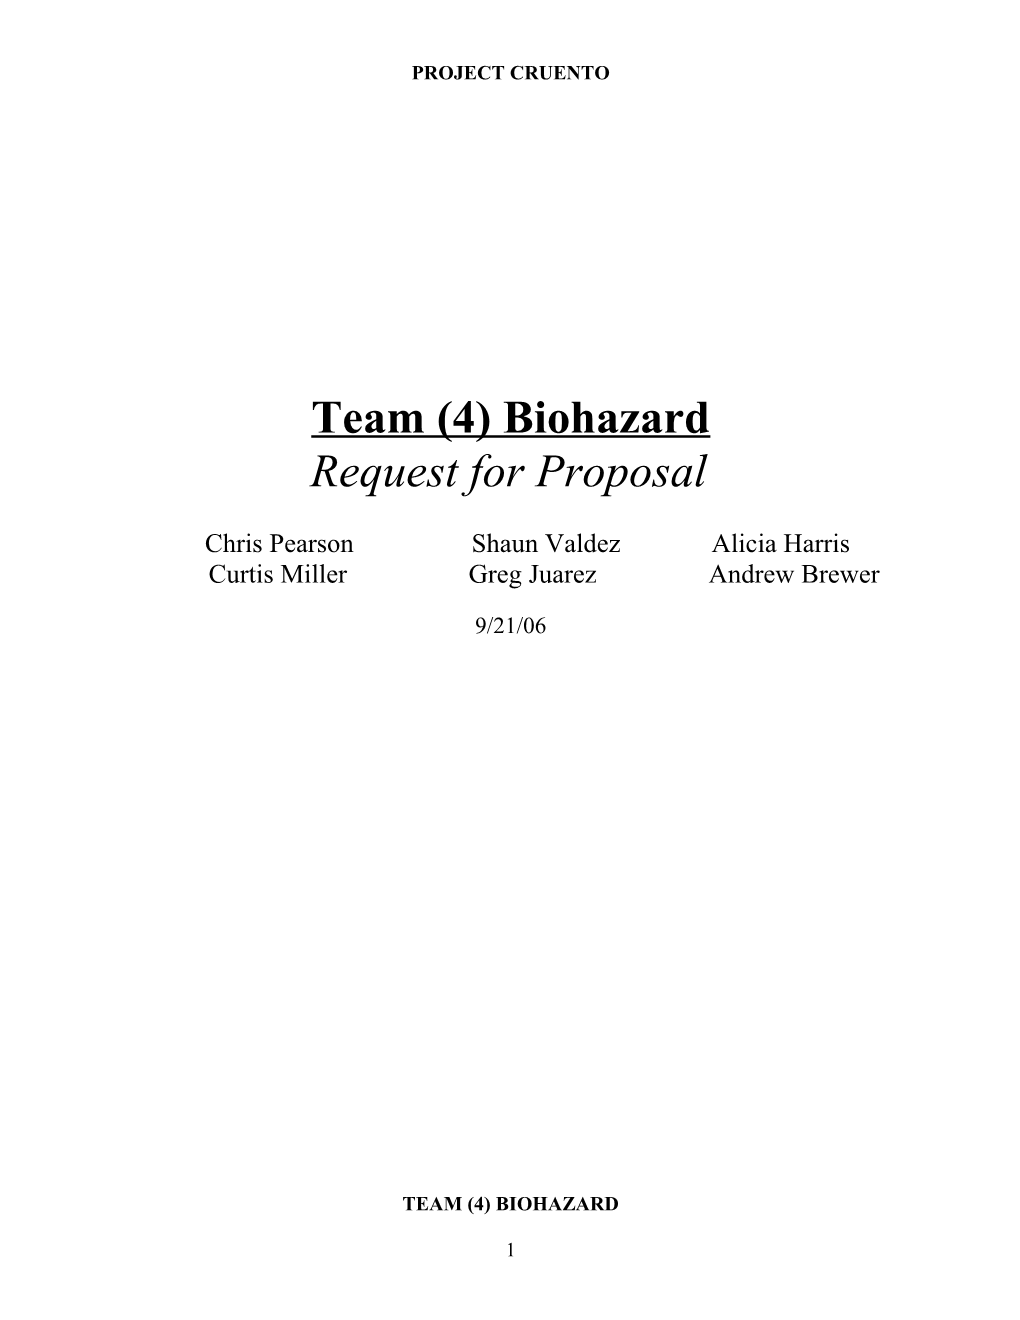 Team (4) Biohazard